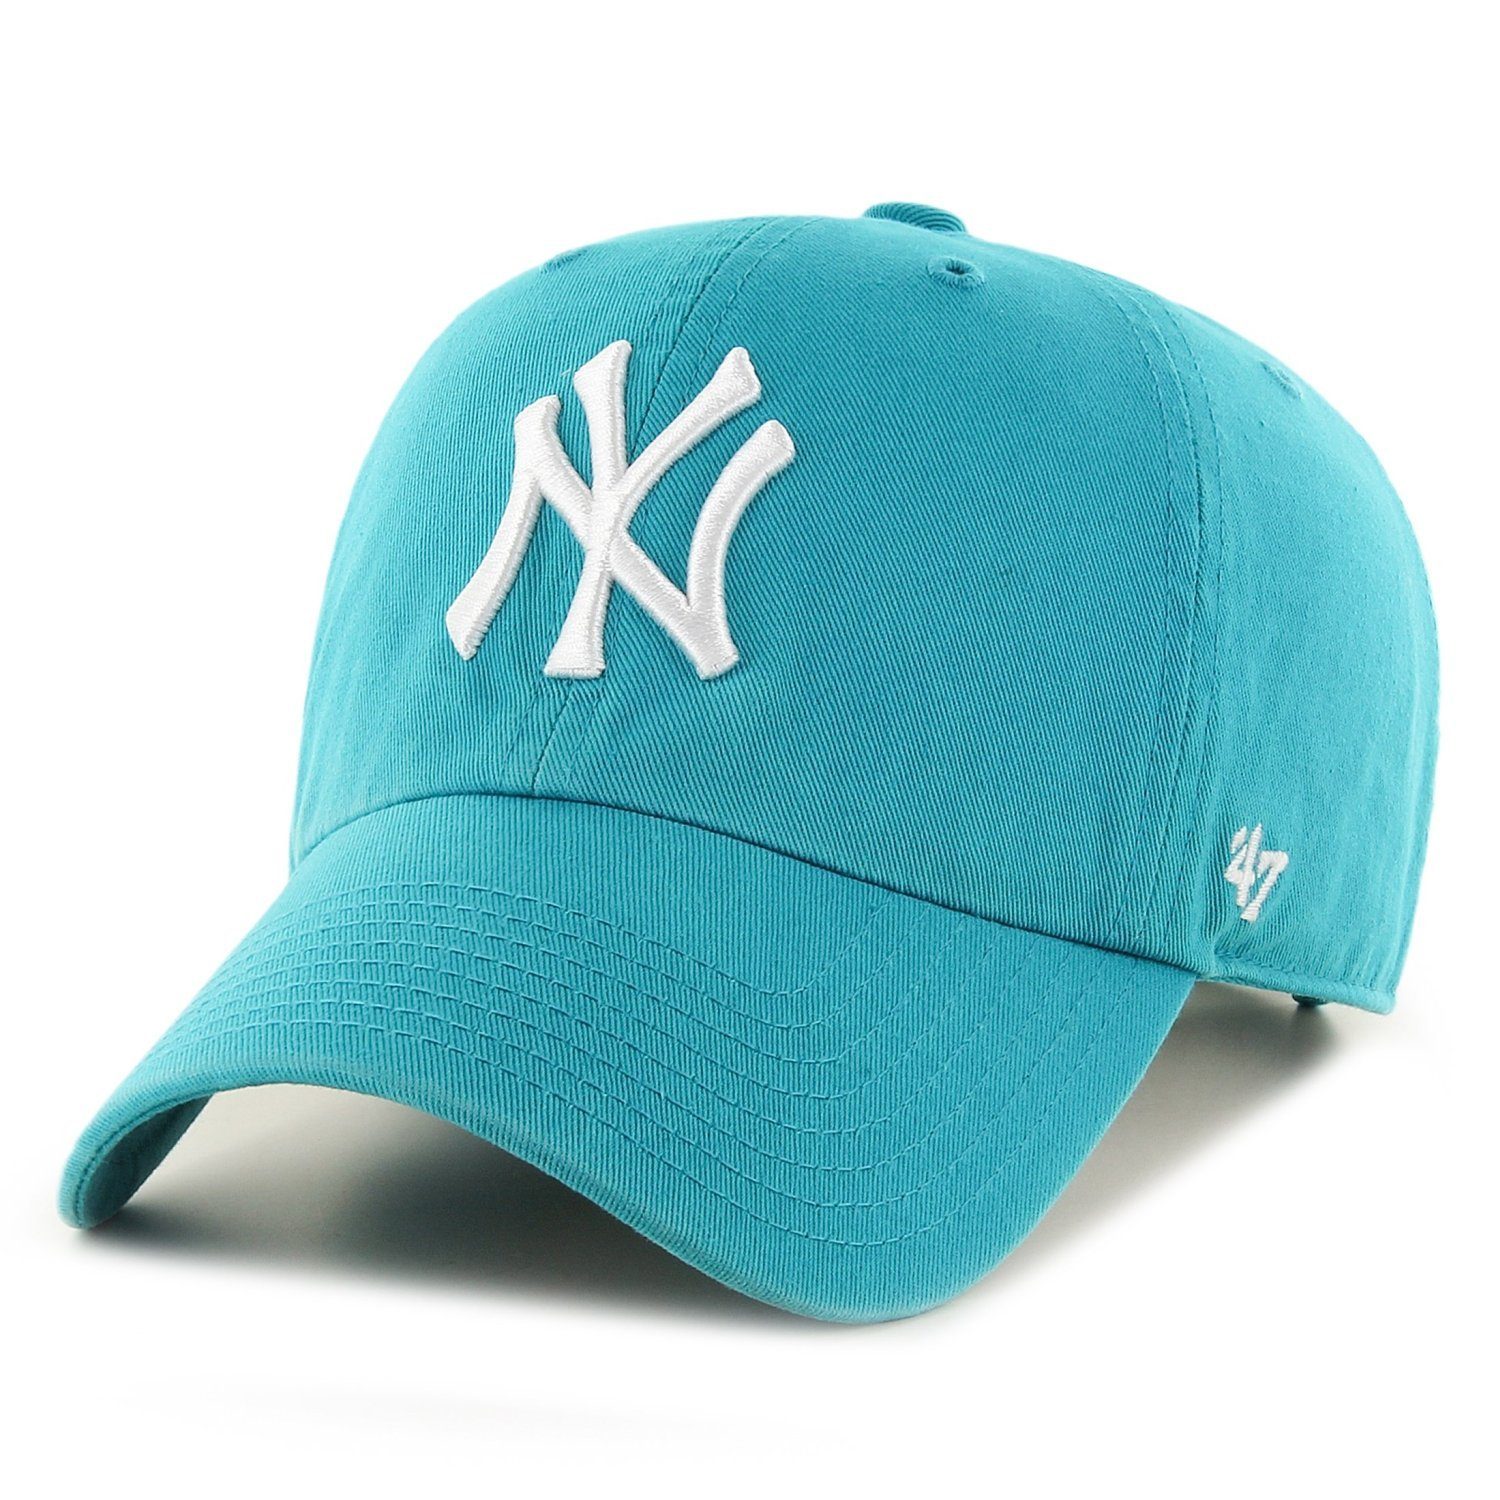 MLB '47 Fit Brand Cap Yankees York Trucker neptune Relaxed New